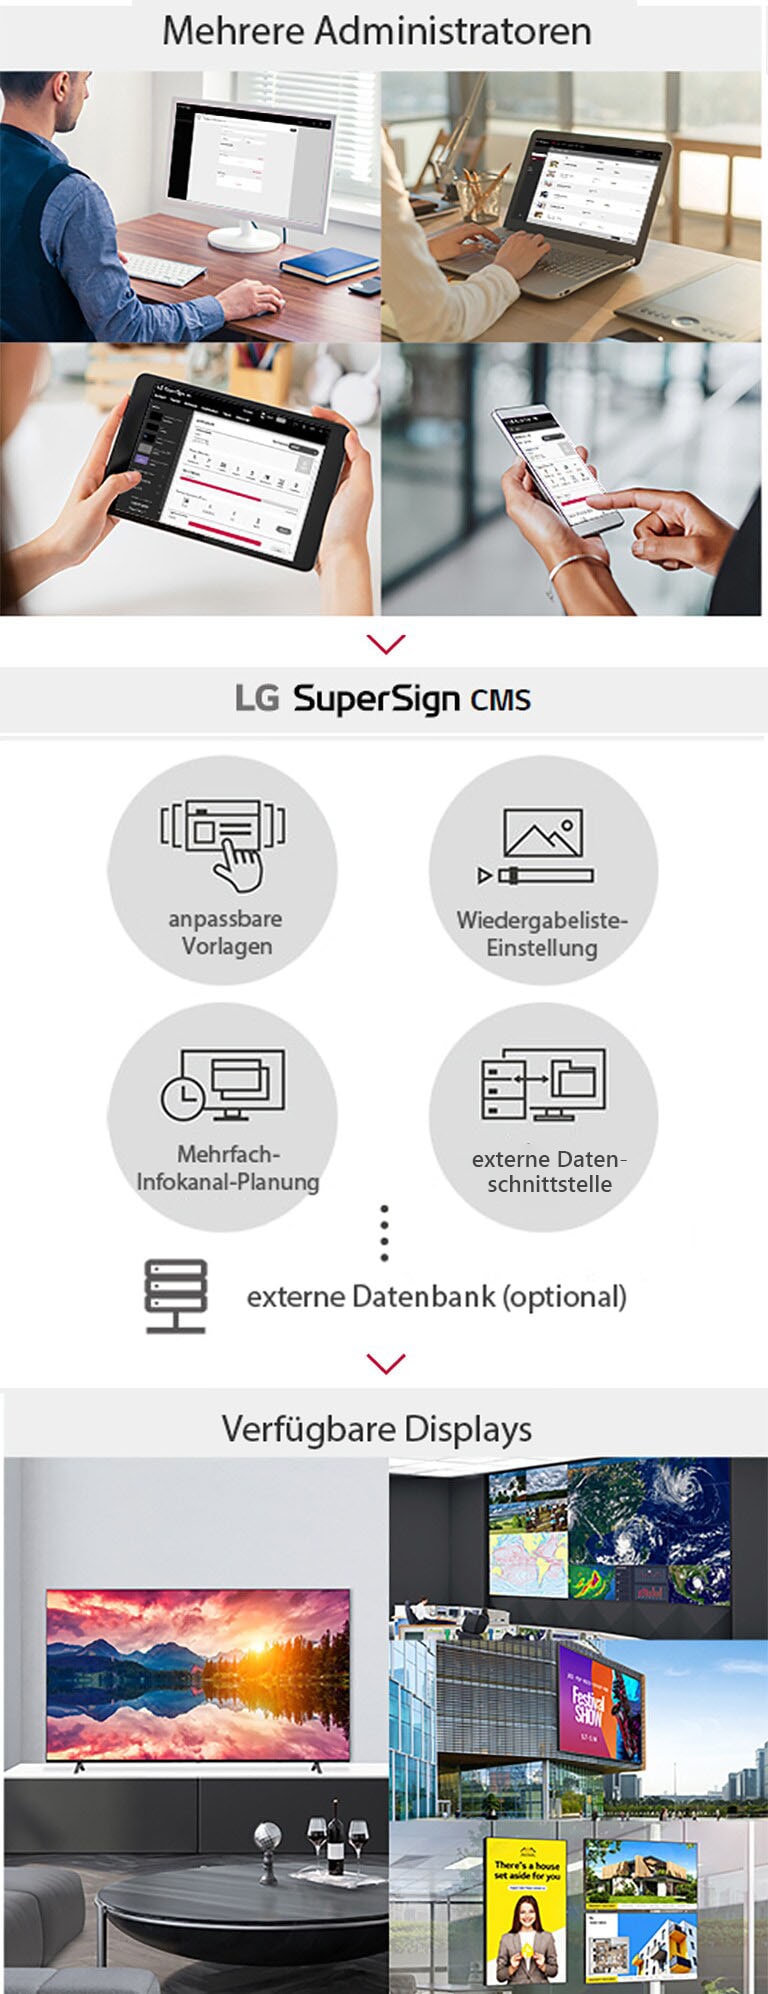 Mehrere Administratoren können über PC, Laptop, Tablet oder sonstige mobile Geräte auf LG SuperSign CMS zugreifen, um digitale Medieninhalte zu erstellen, zu steuern und zu verbreiten, die auf eine Vielzahl von Displays zugeschnitten sind.